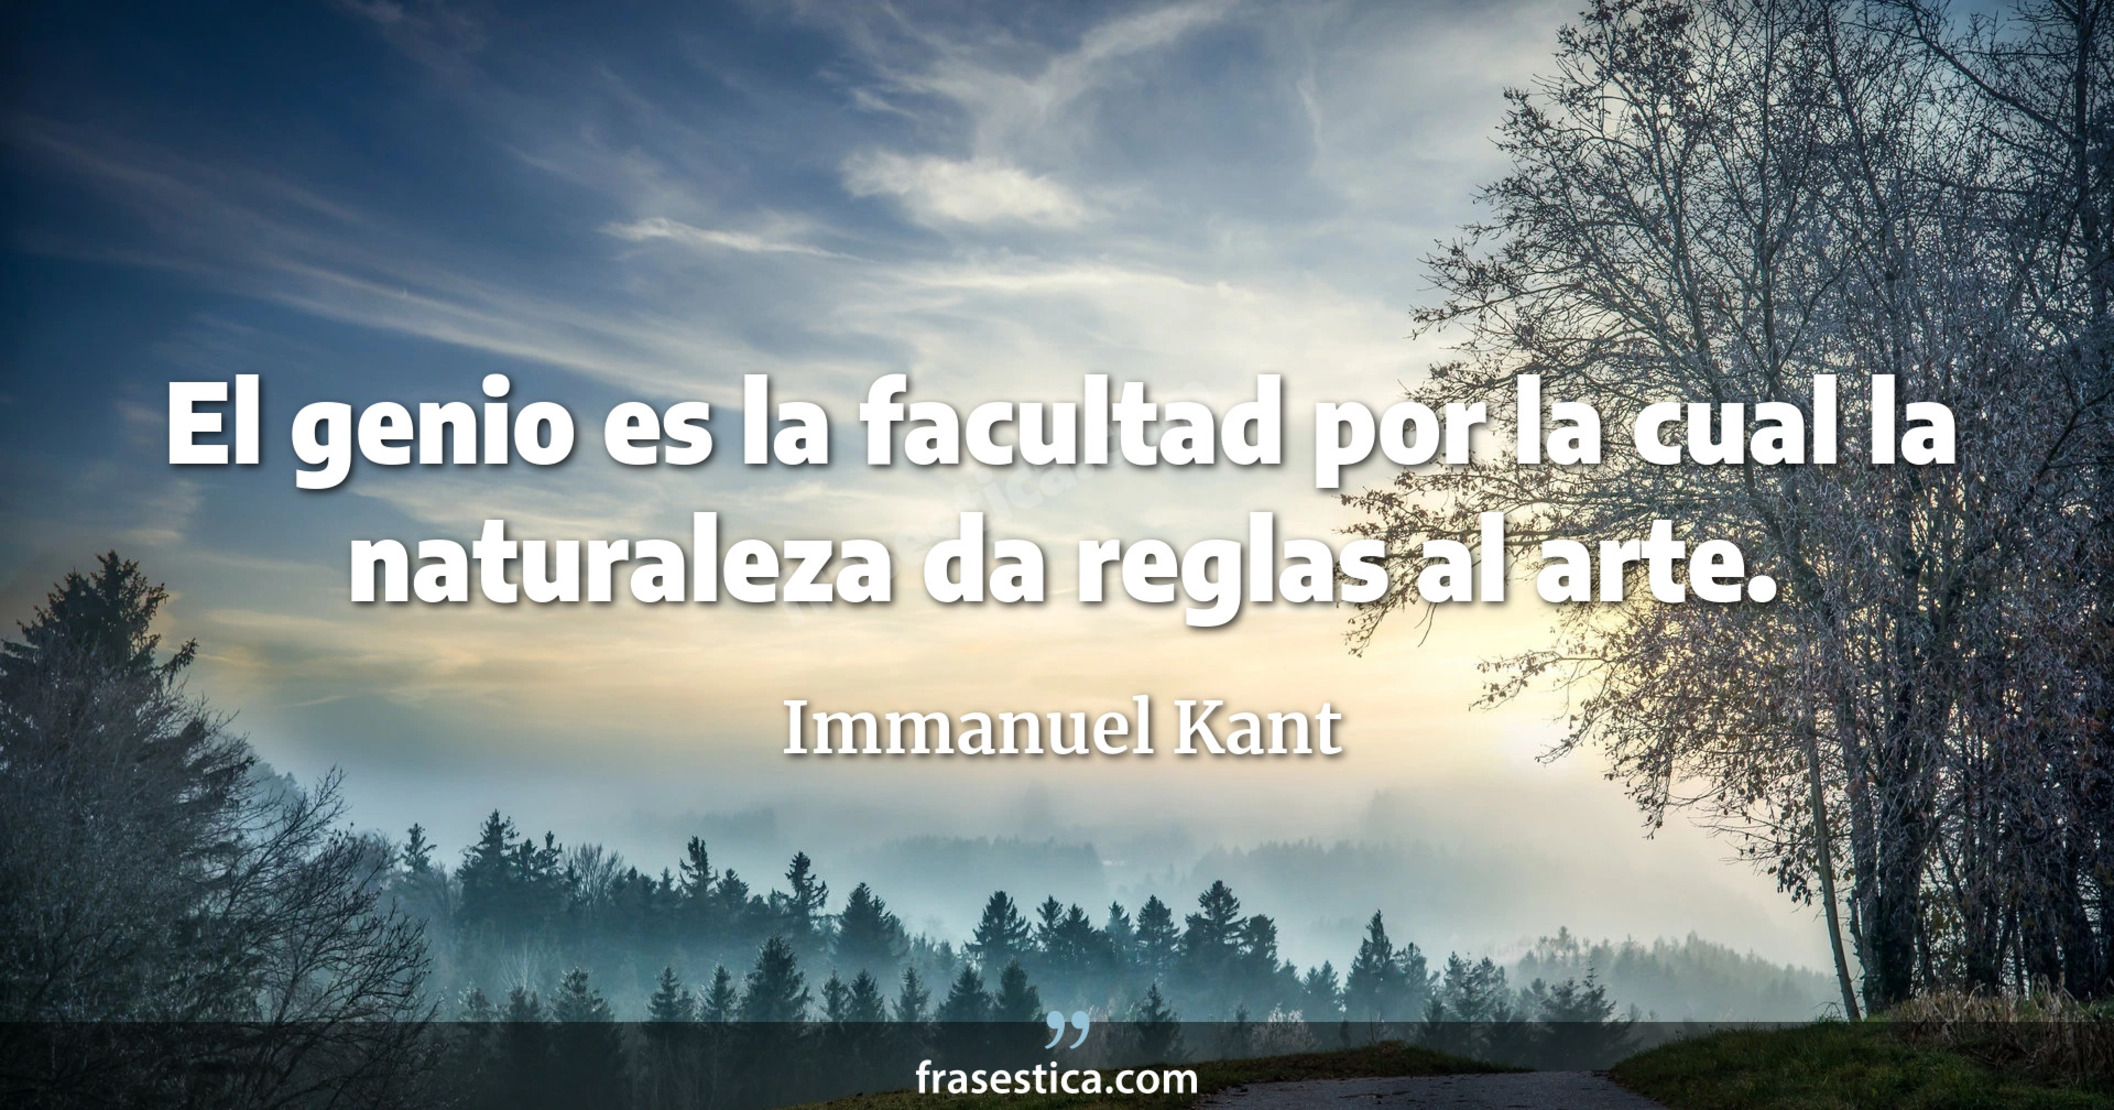 El genio es la facultad por la cual la naturaleza da reglas al arte. - Immanuel Kant